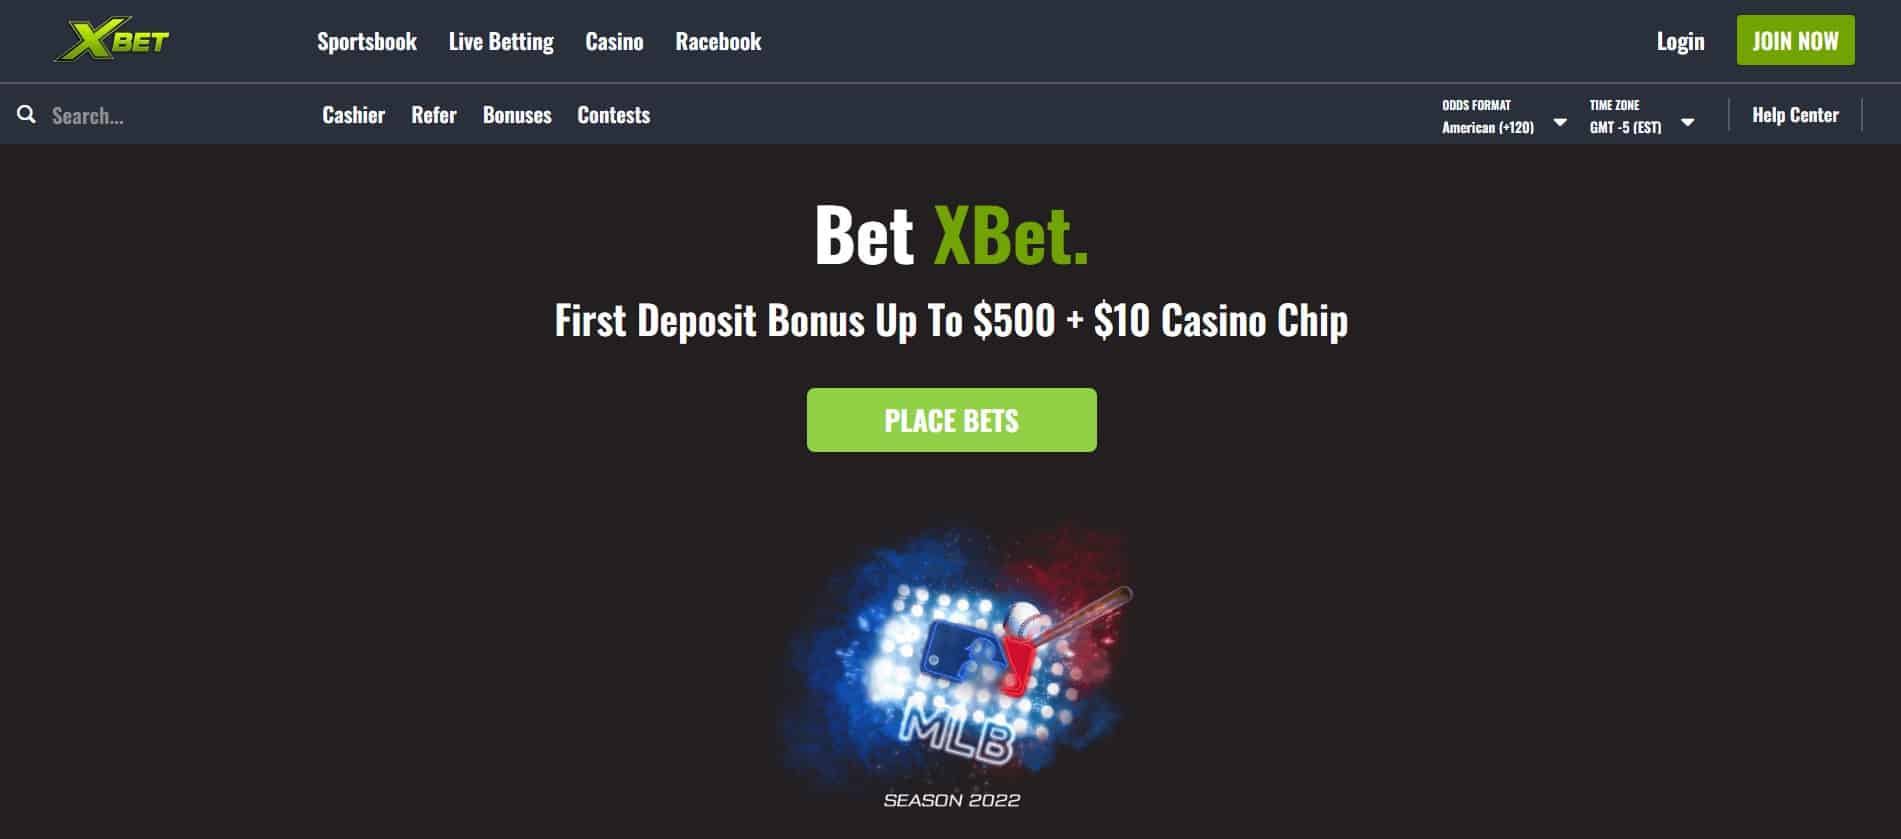 xbet online gambling kansas